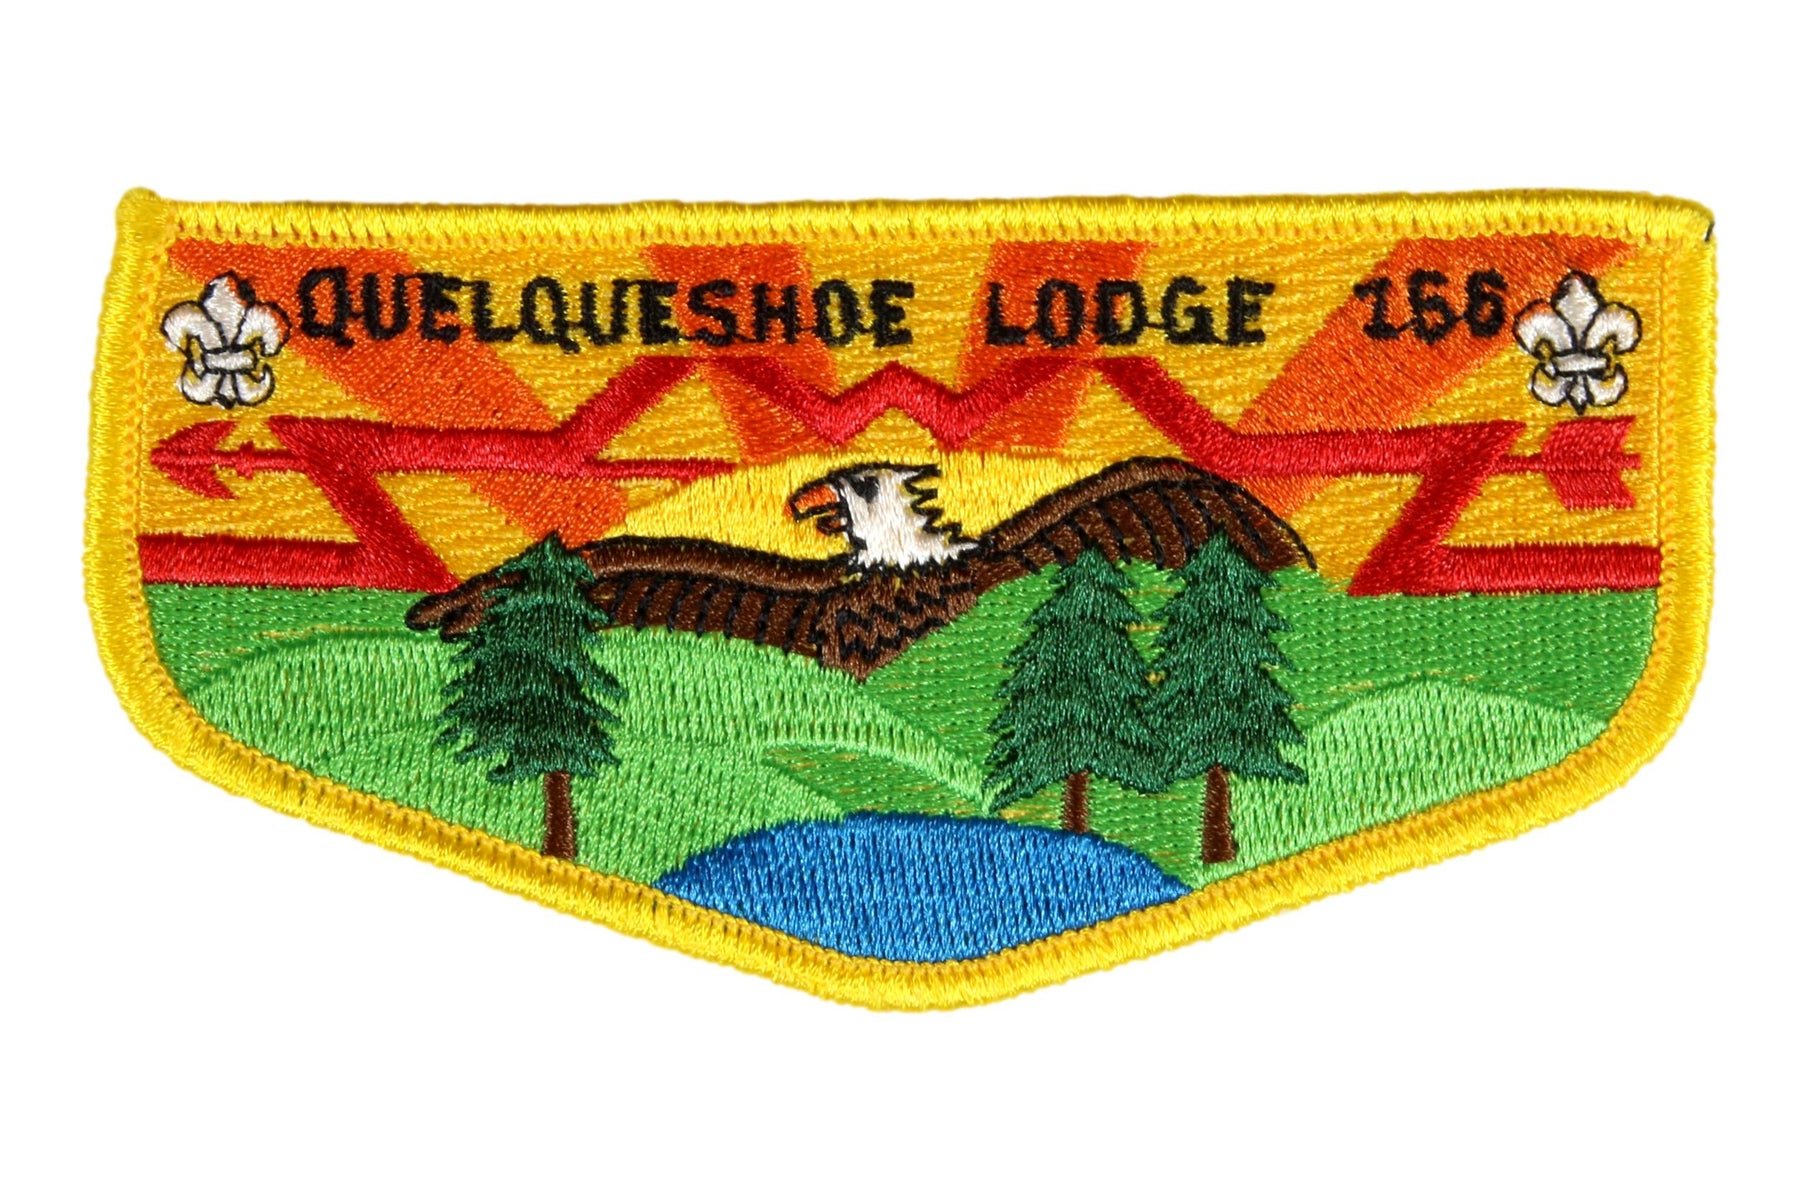 Lodge 166 Quelqueshoe Flap S-45